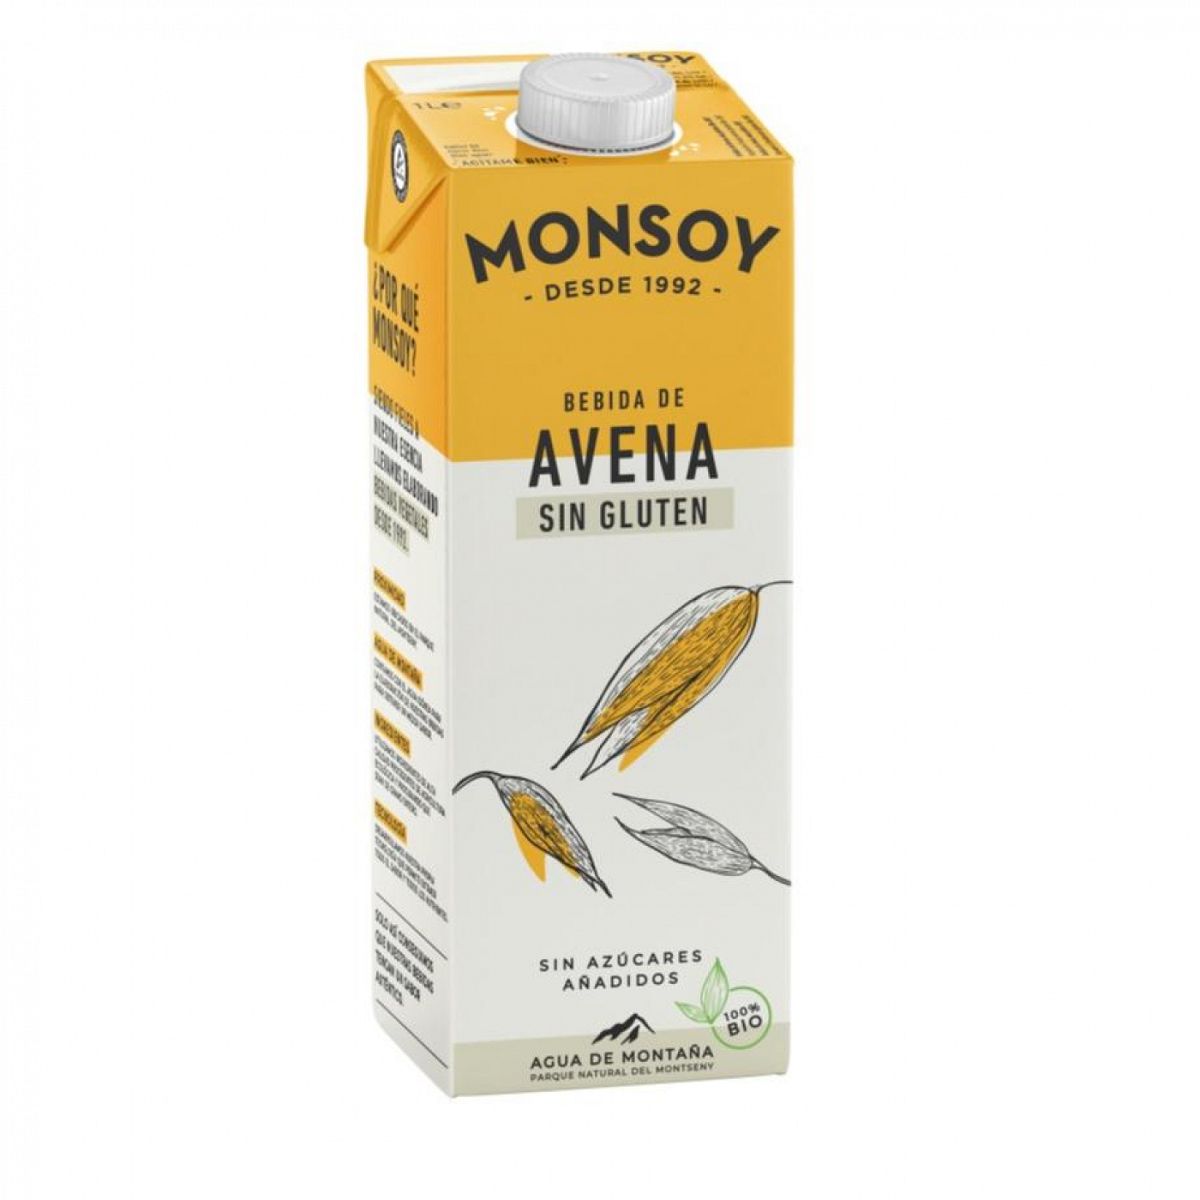 Monsoy - Oat drink 1 liter